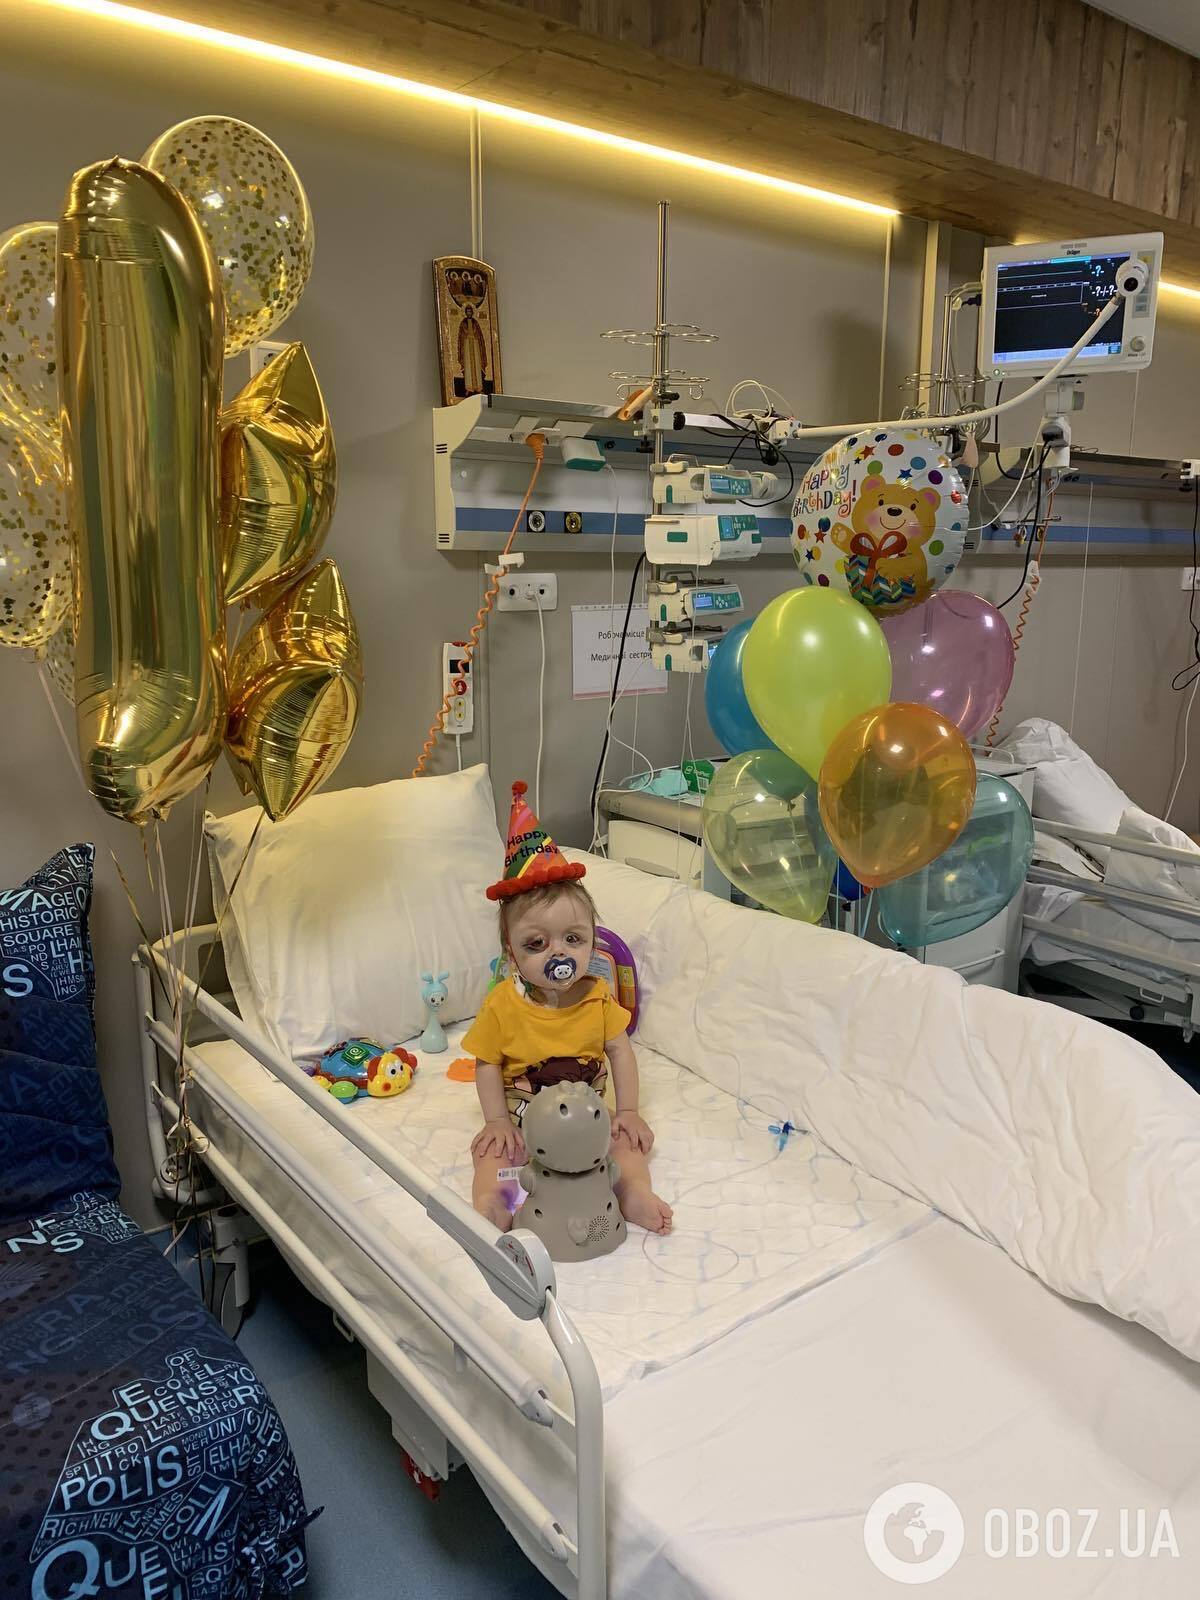 19 января мальчику исполнился 1 год. Свой День рождения малыш тоже провел в больничной палате